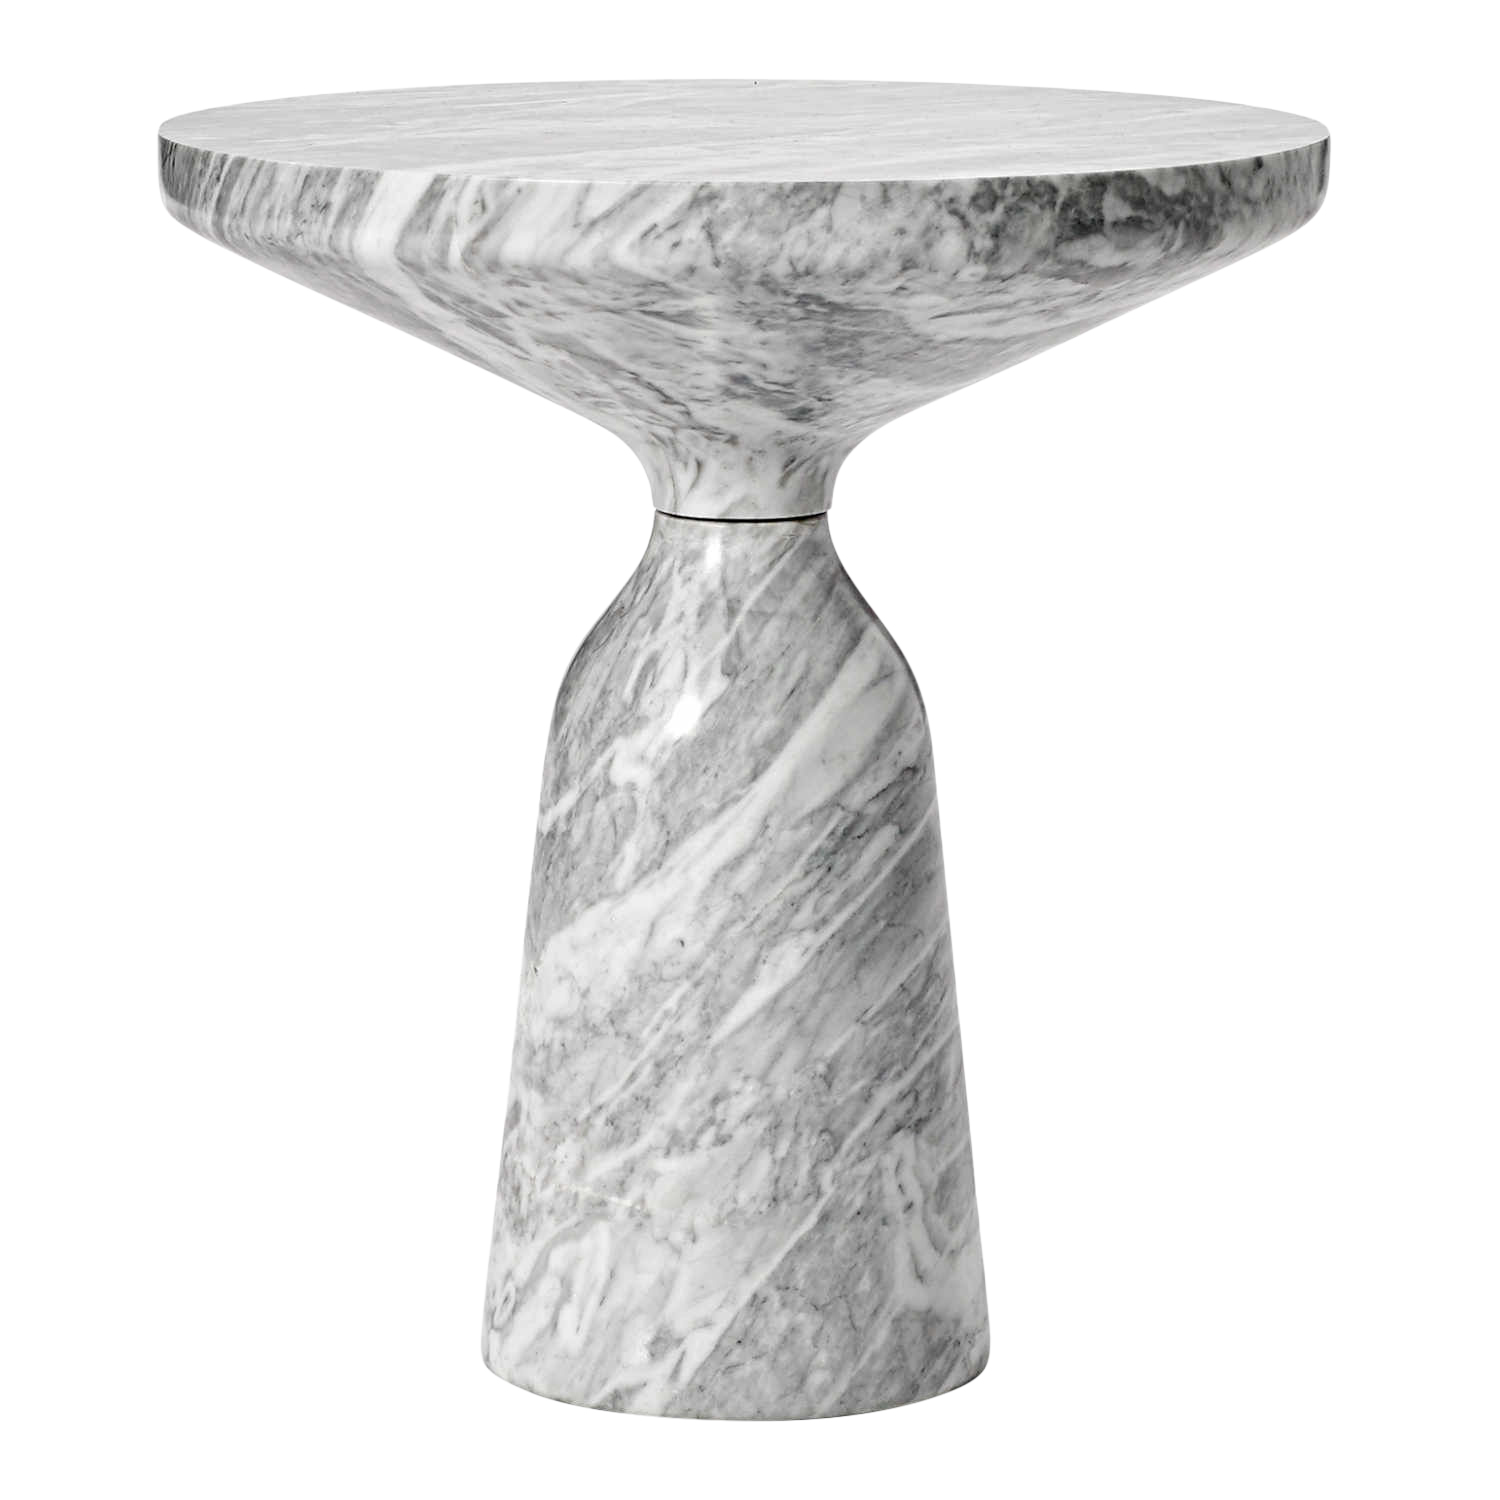 Bell Side Table Marble Beistelltisch, Ausführung marmor, grigio nuvolato, Oberfläche poliert von ClassiCon